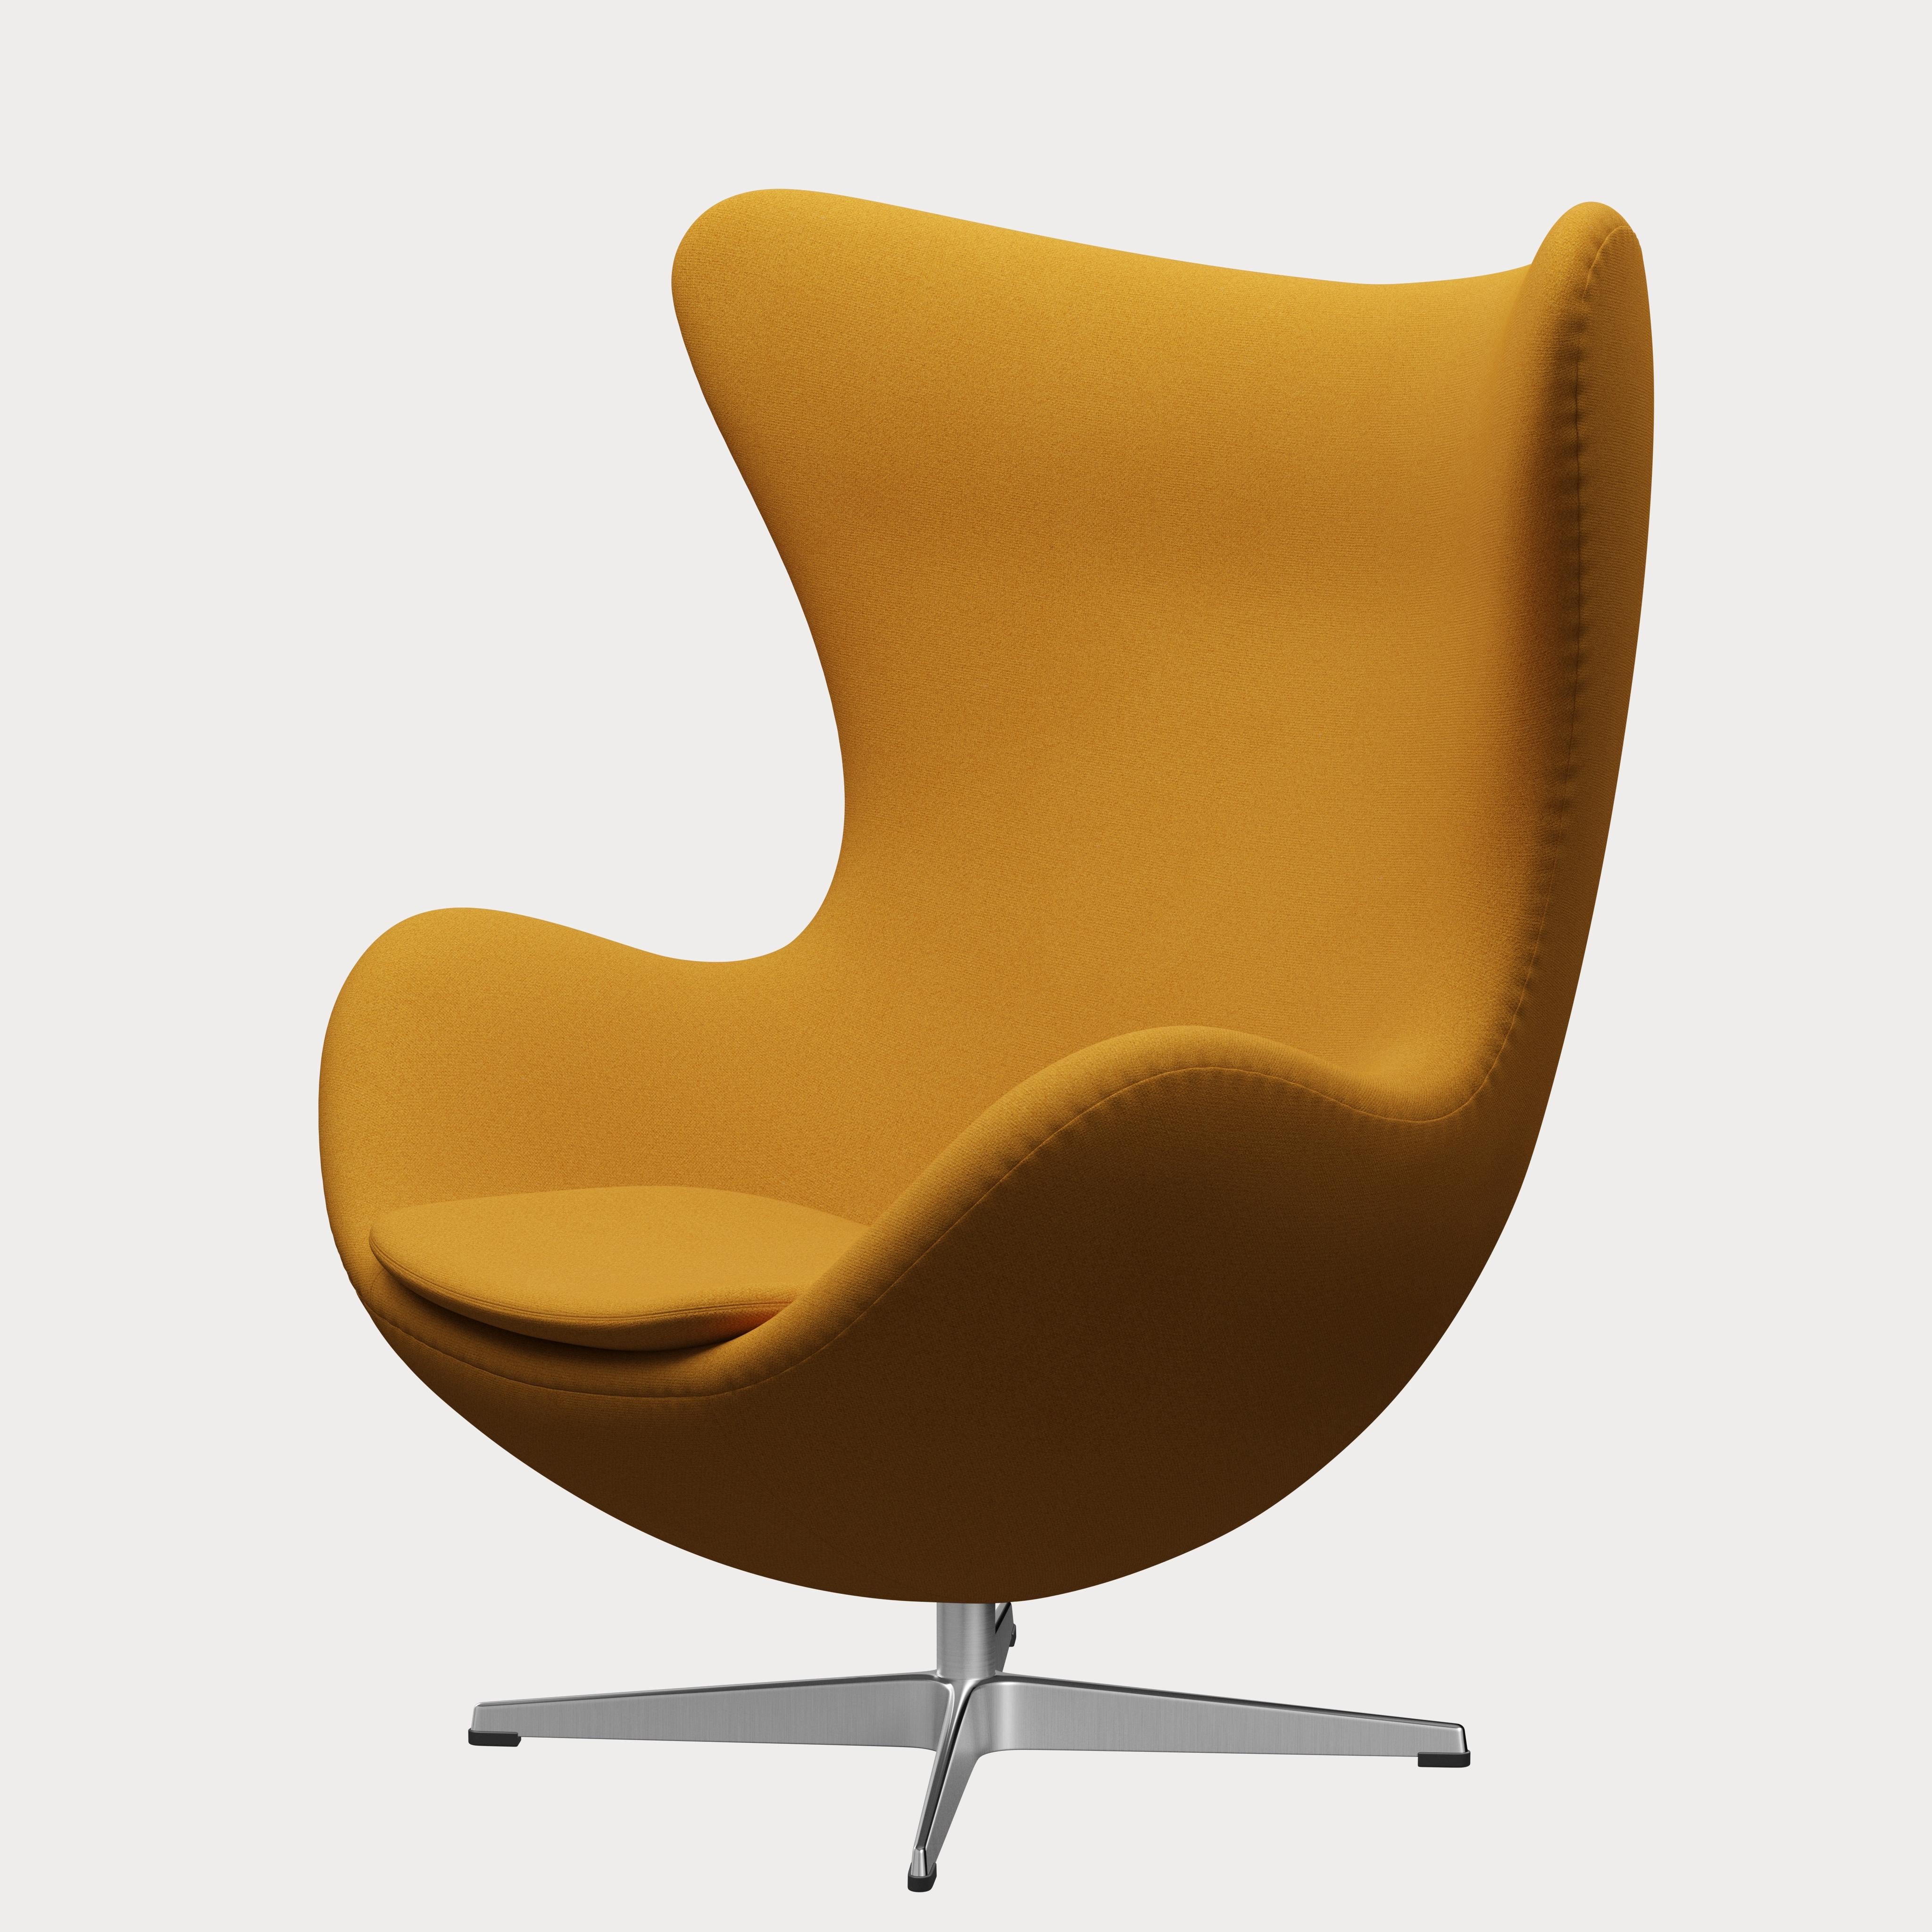 Danish Arne Jacobsen 'Egg' Chair for Fritz Hansen in Fabric Upholstery (Cat. 1) For Sale